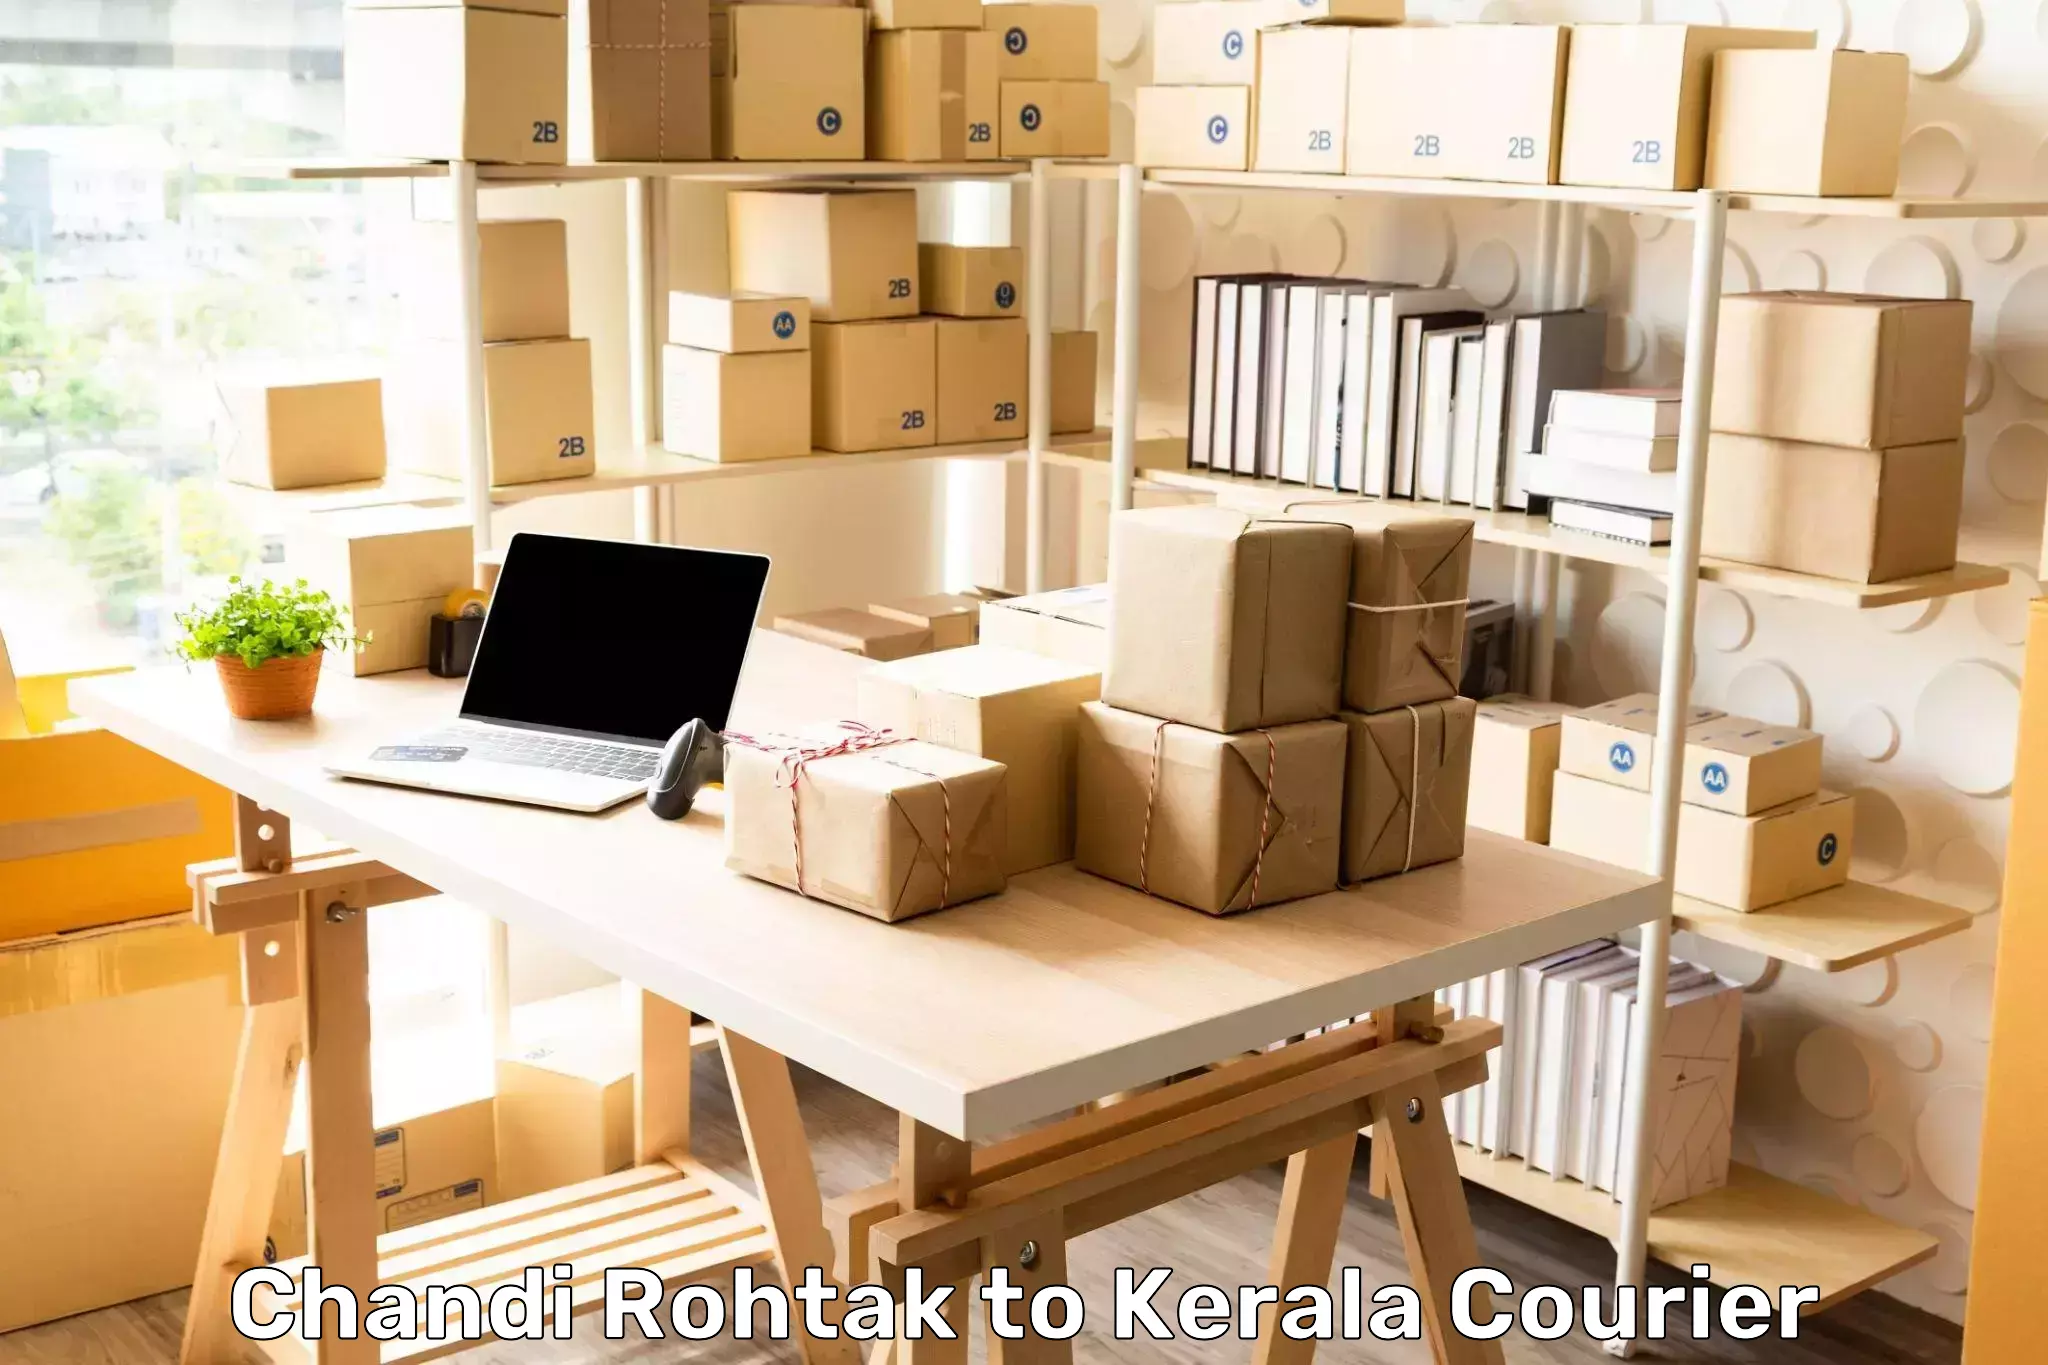 Express shipping Chandi Rohtak to Kerala